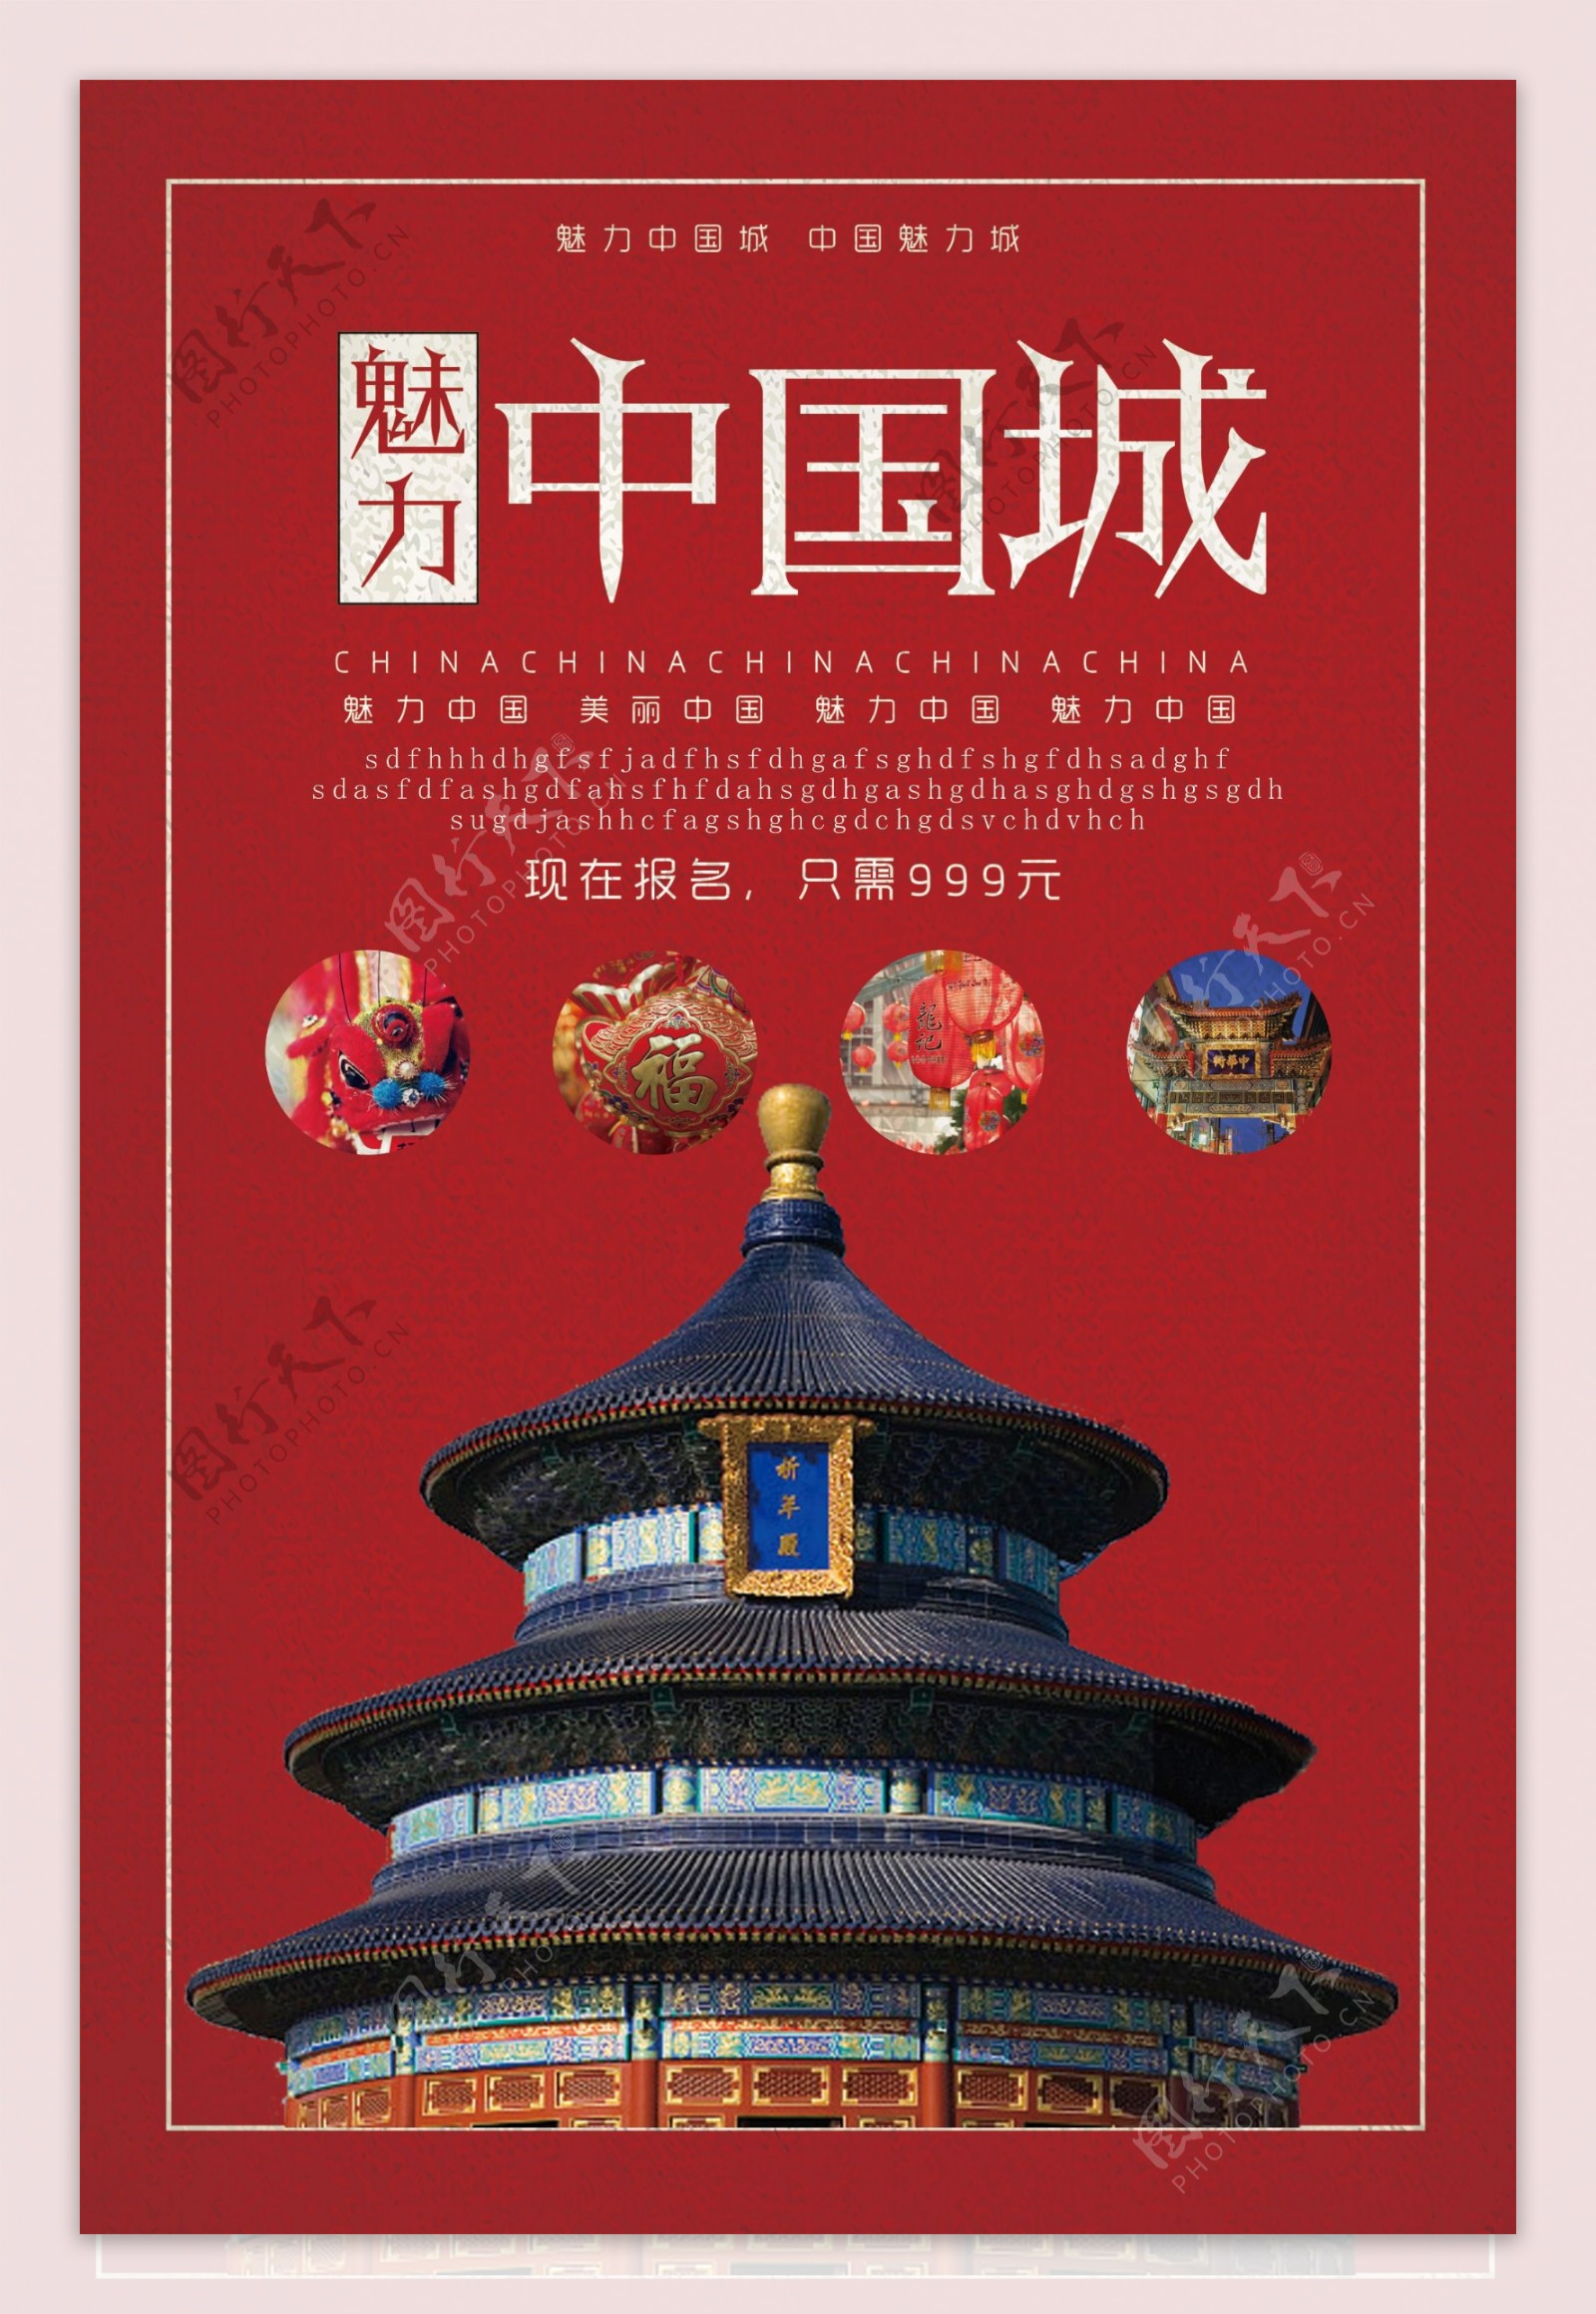 魅力中国城宣传海报设计